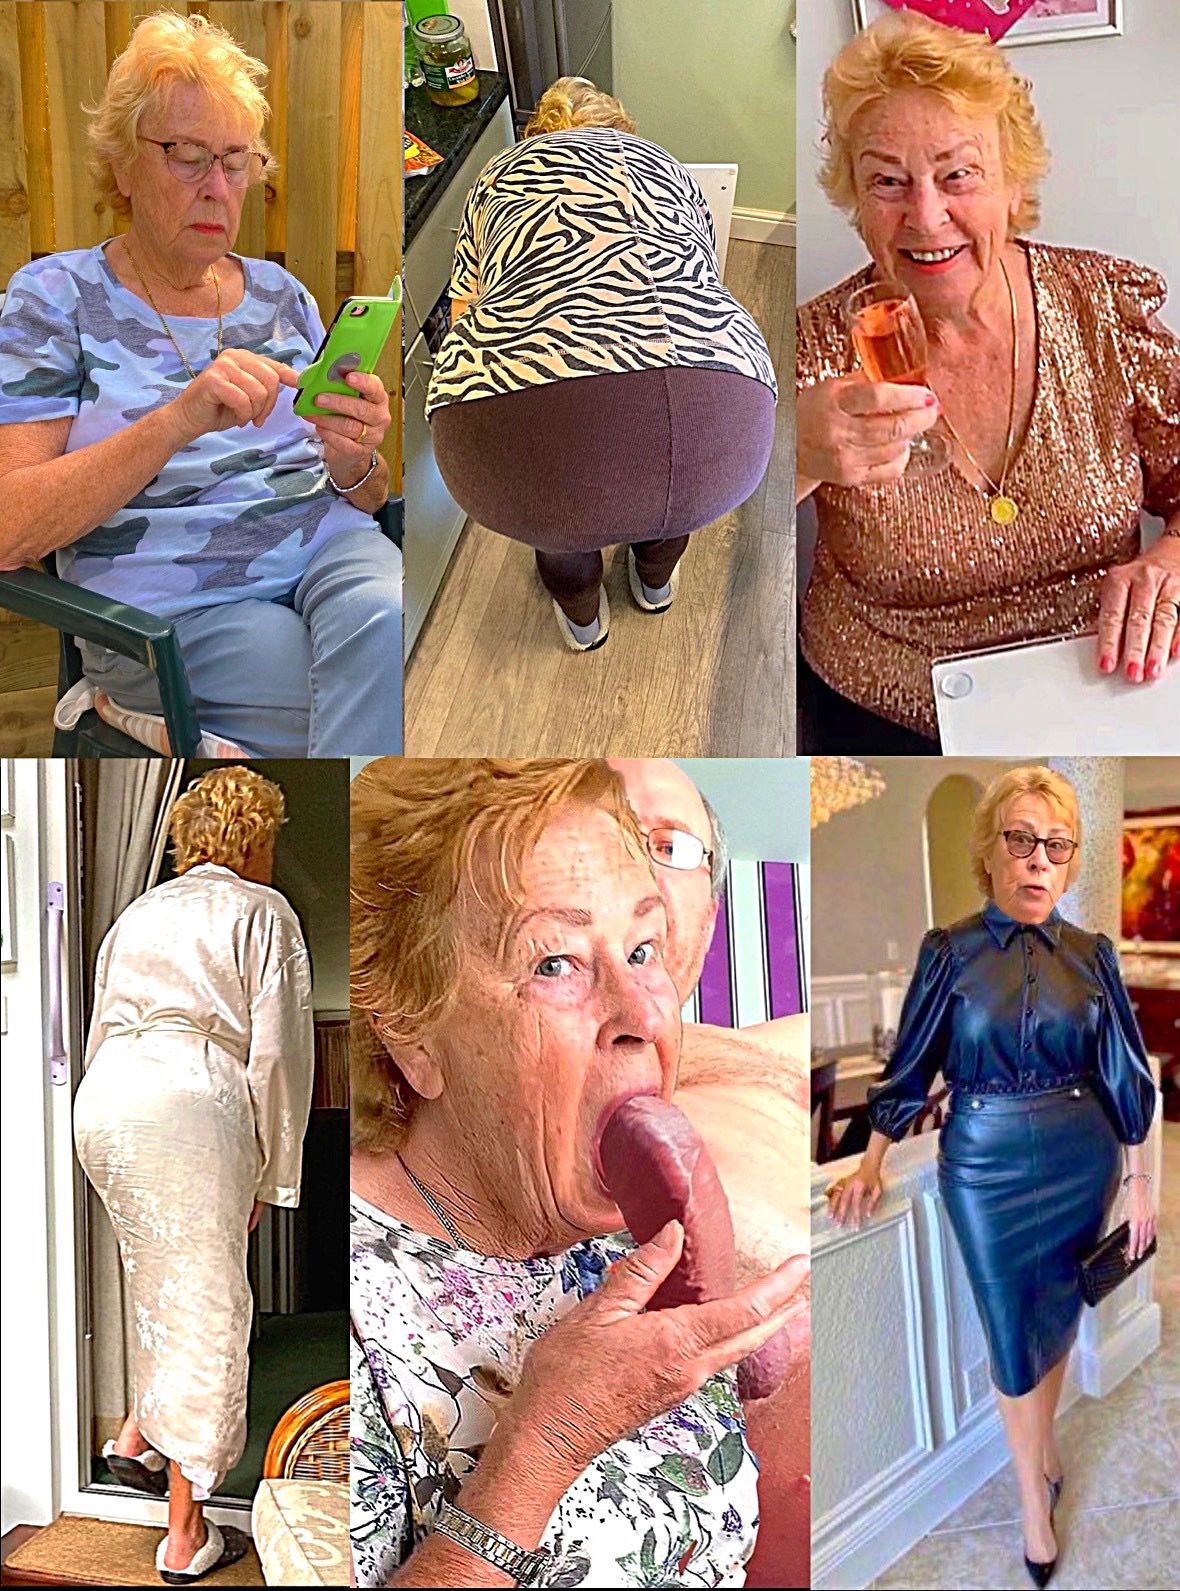 Granny Blowjob Porn - Granny Blowjob Porn Slut Cathy Blowjob and Sexy Big Arse BBW (3 pictures) -  Shooshtime